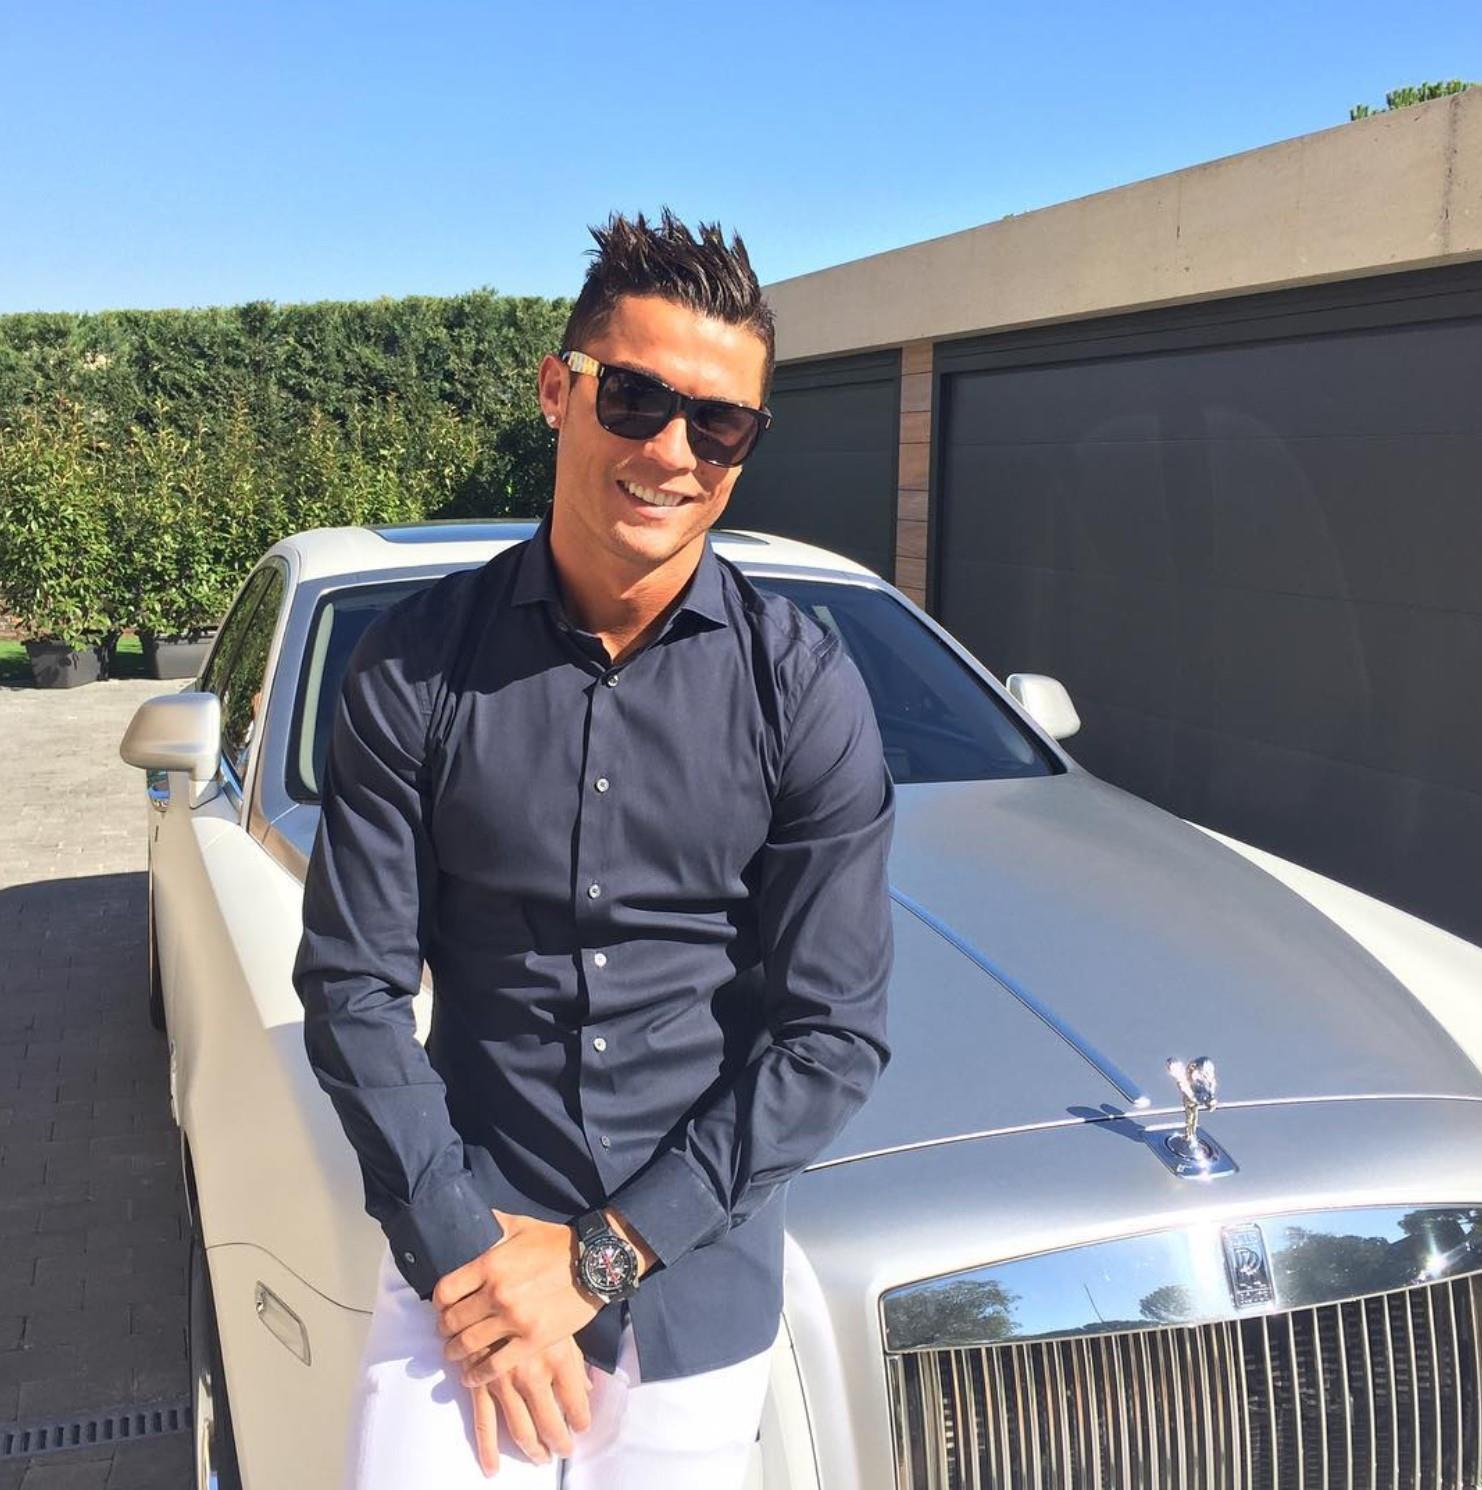 Cận cảnh bộ sưu tập siêu xe trị giá 17 triệu bảng Anh của Cristiano Ronaldo - Ảnh 6.